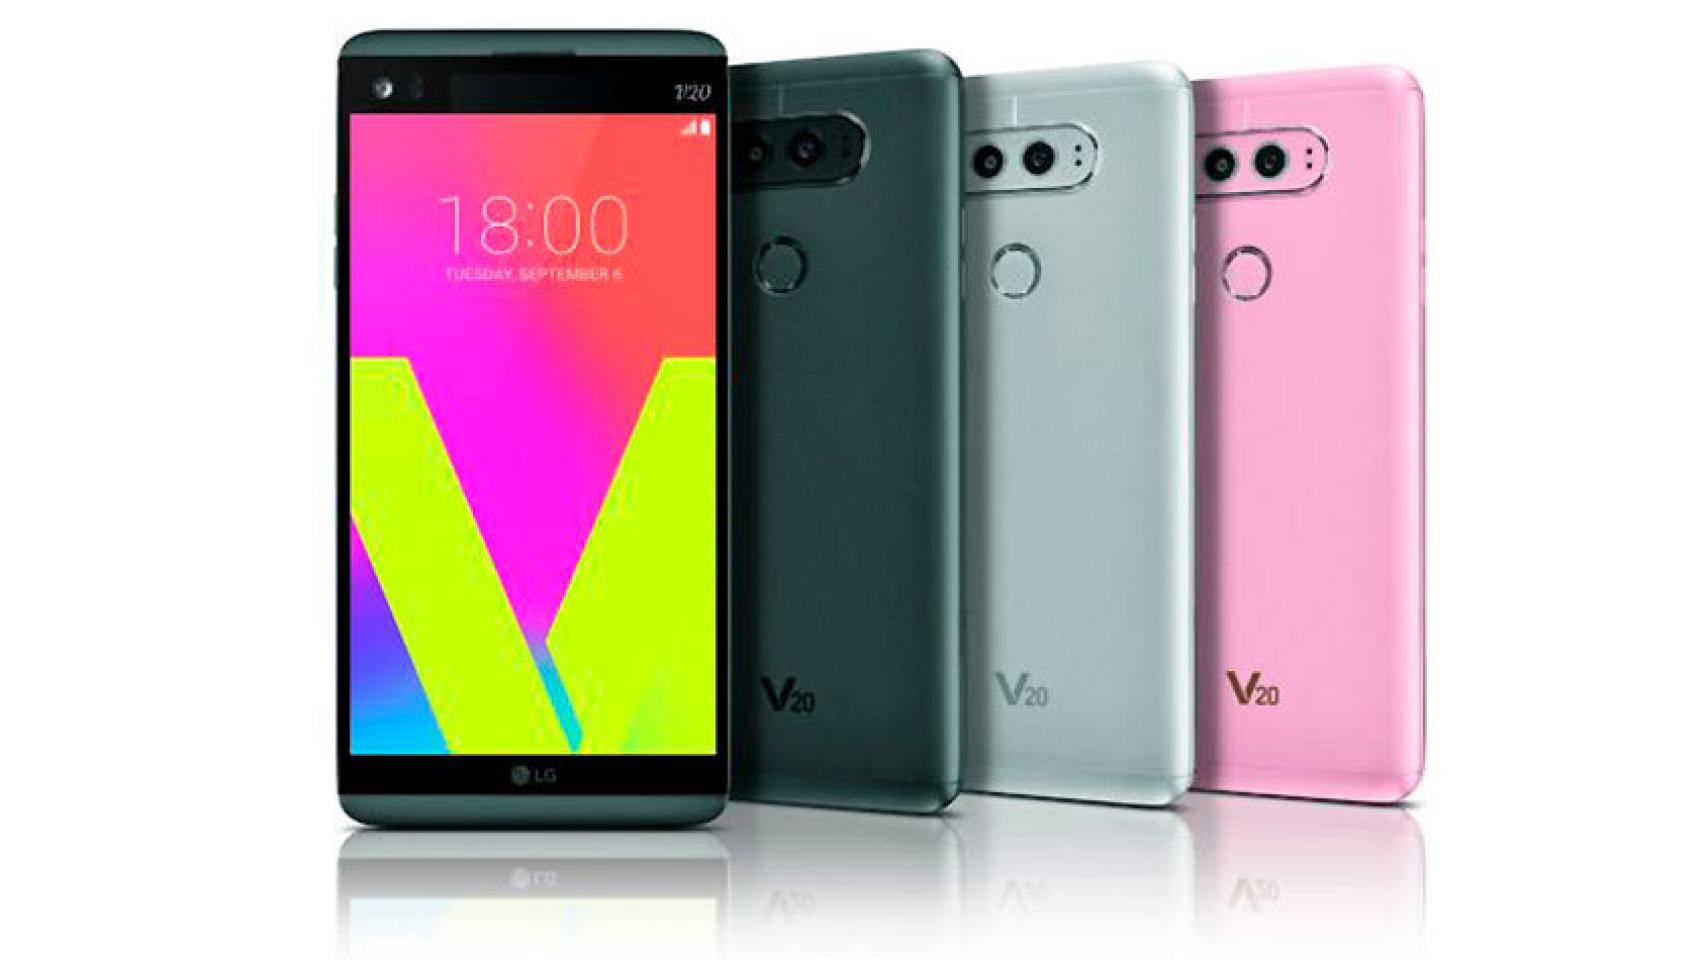 LG V20 sería el primer móvil con Android 7.0 Nougat de fábrica